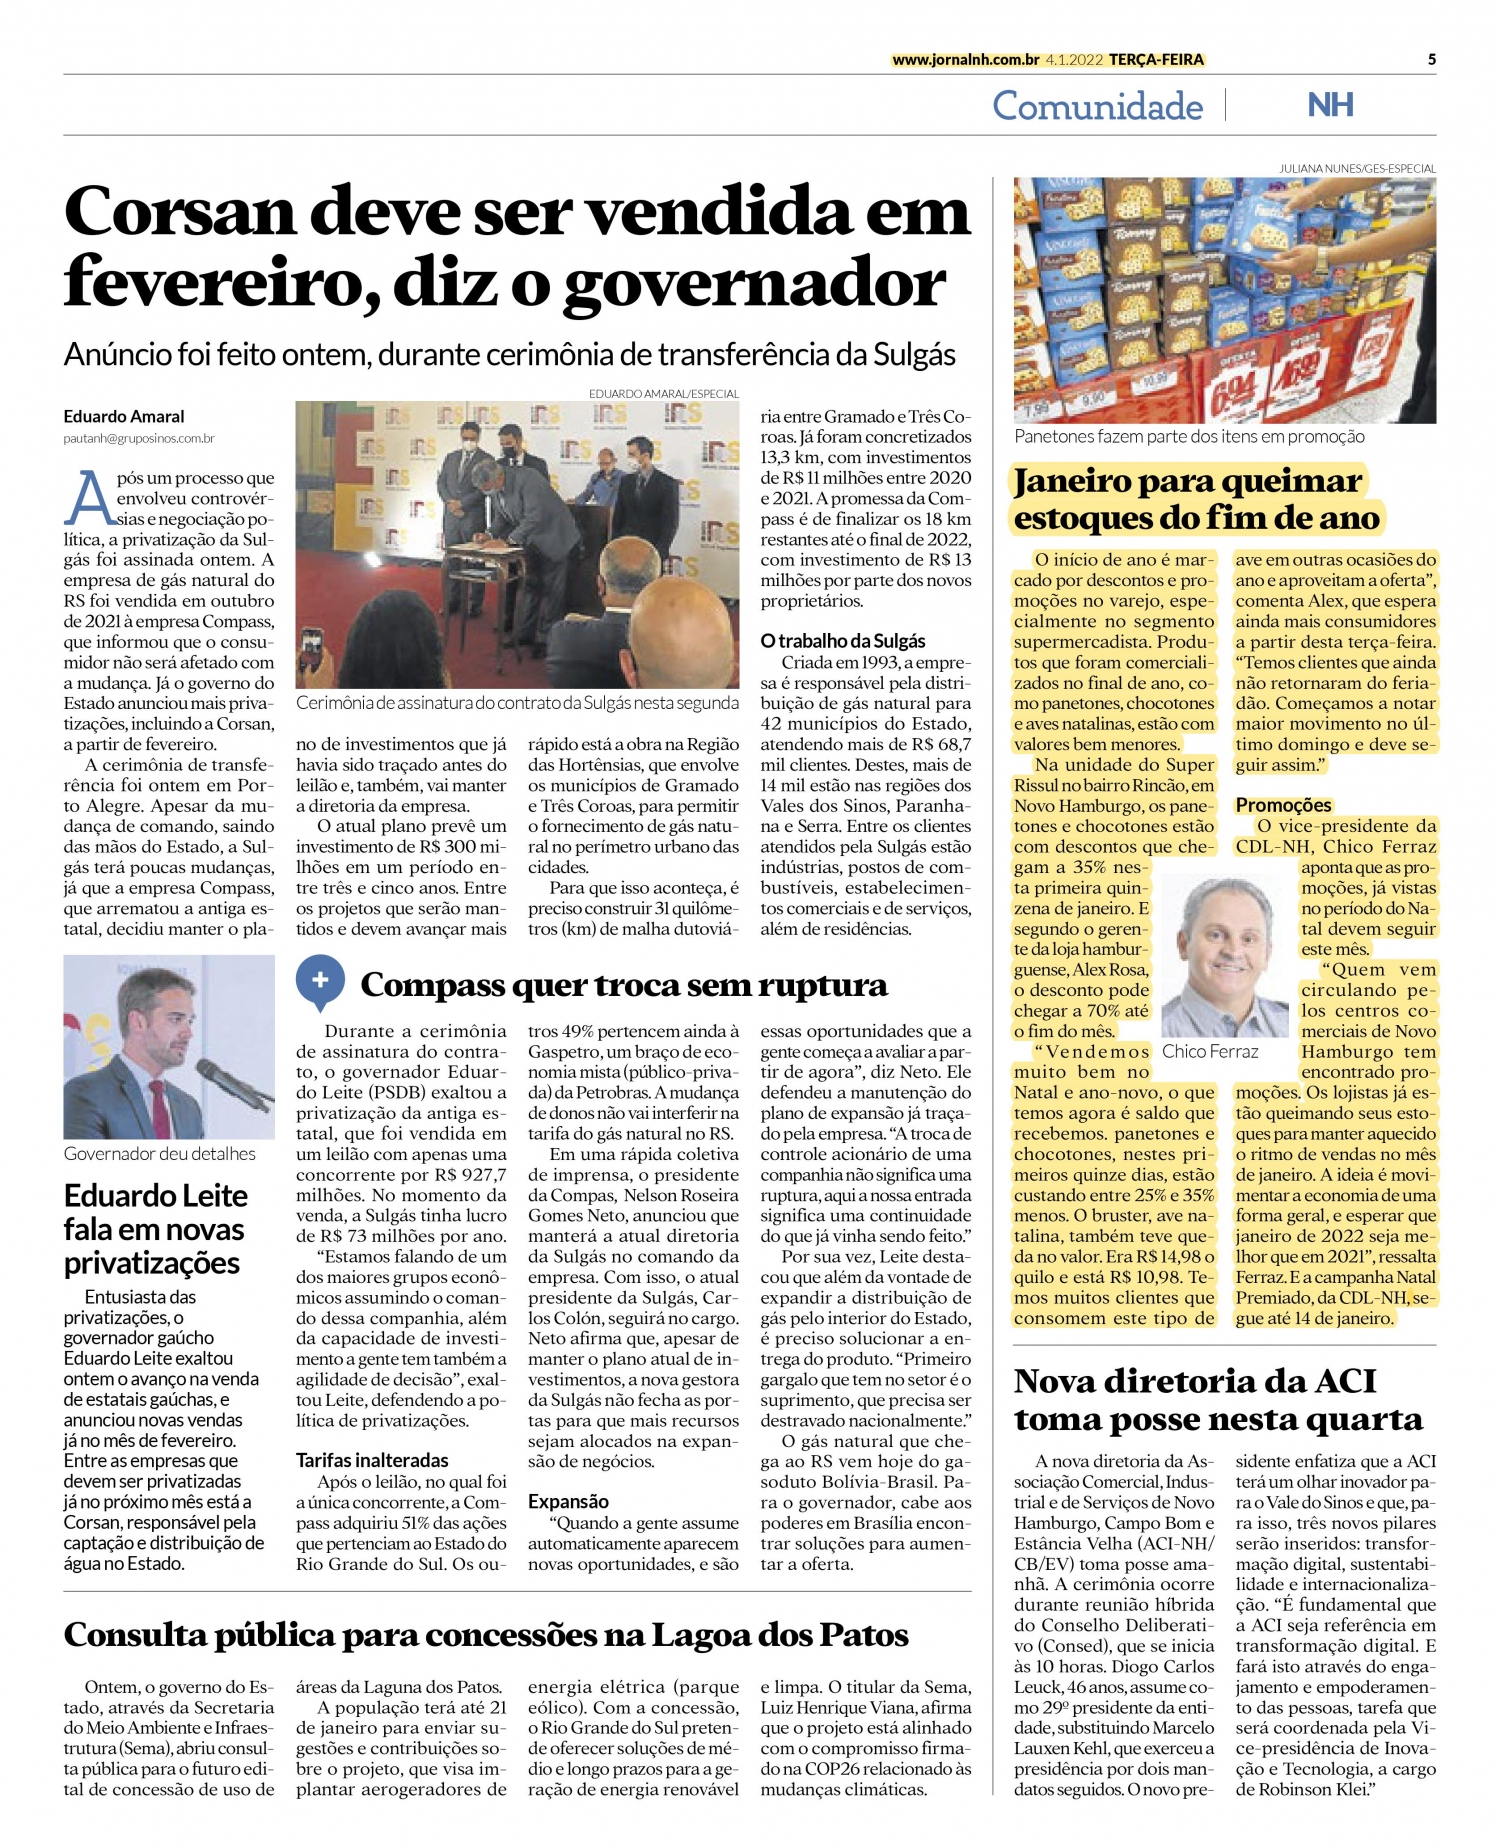 Mês para queimar estoques de fim de ano, confira palavra do vice-presidente da CDL NH, Chico Ferraz em jornal da região!